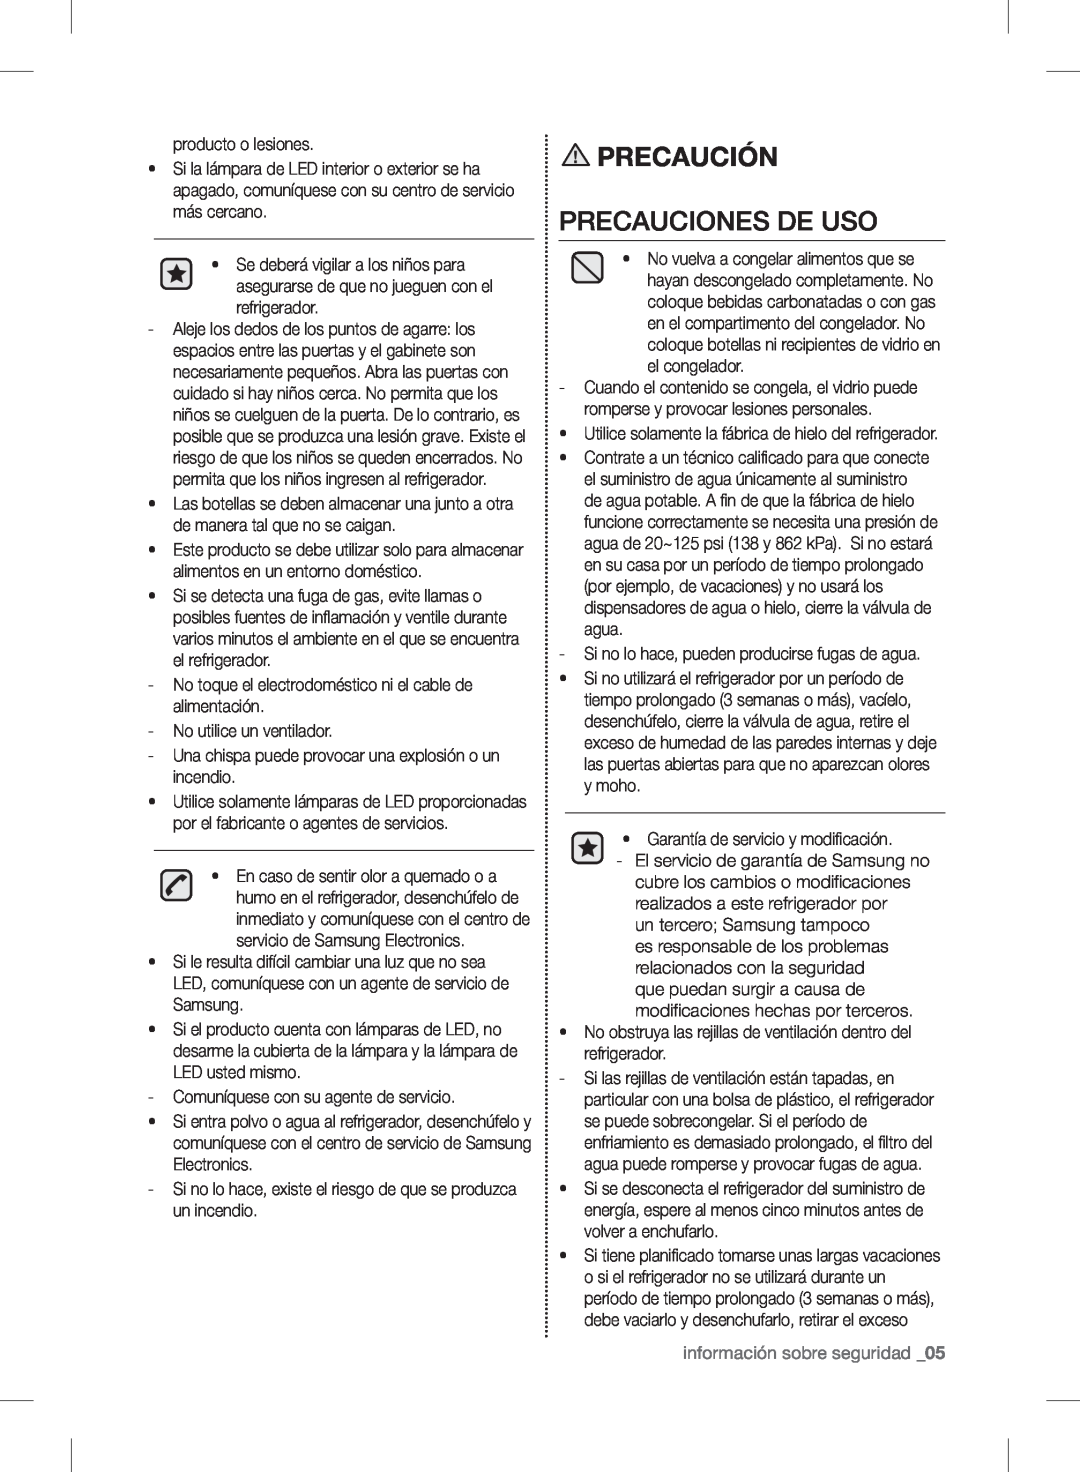 Samsung RF24FSEDBSR user manual Precauciones De Uso, información sobre seguridad _05, Precaución 